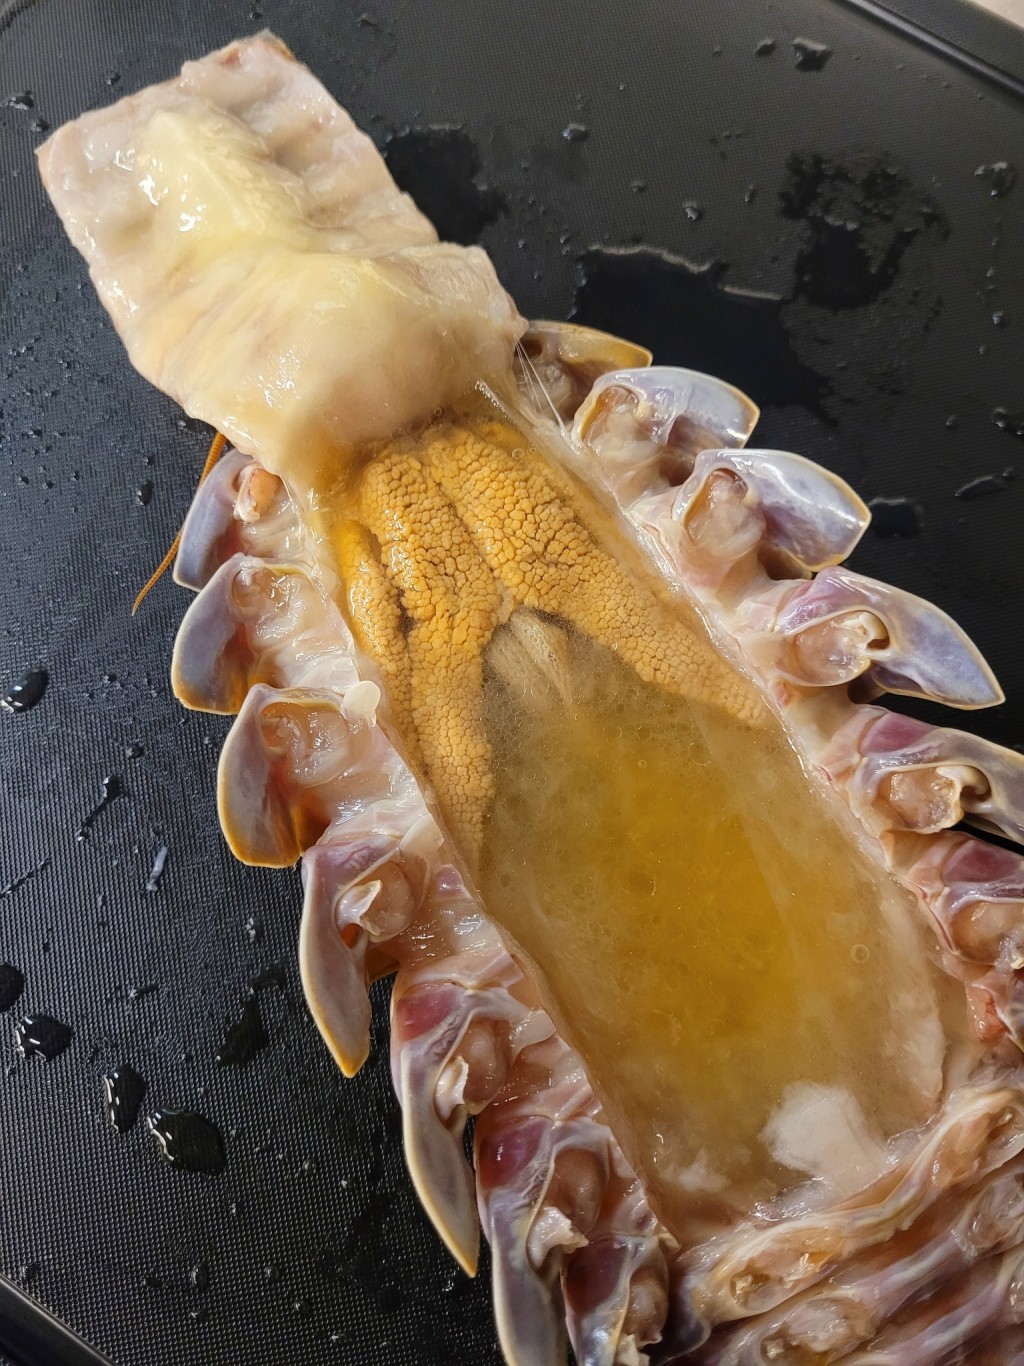 黄色的腺体吃起来有类似蟹黄蟹膏的口感与味道（图片来源: 拉面公子FB）